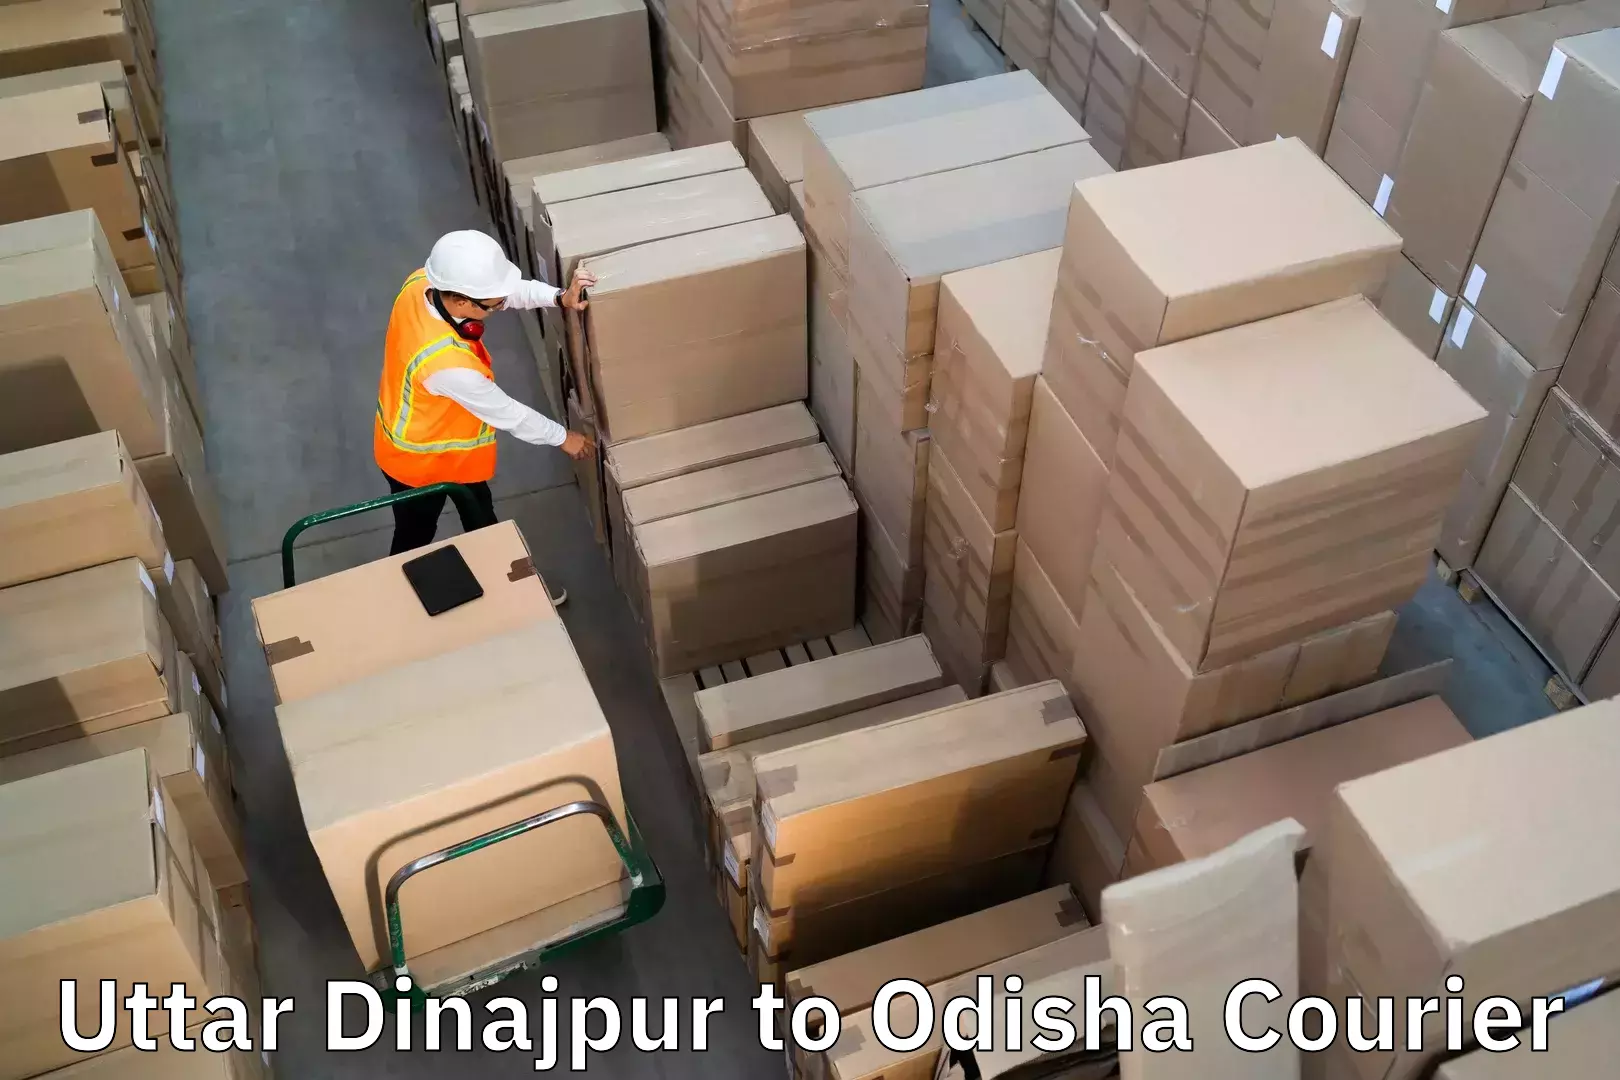 Luggage delivery estimate Uttar Dinajpur to Tikiri